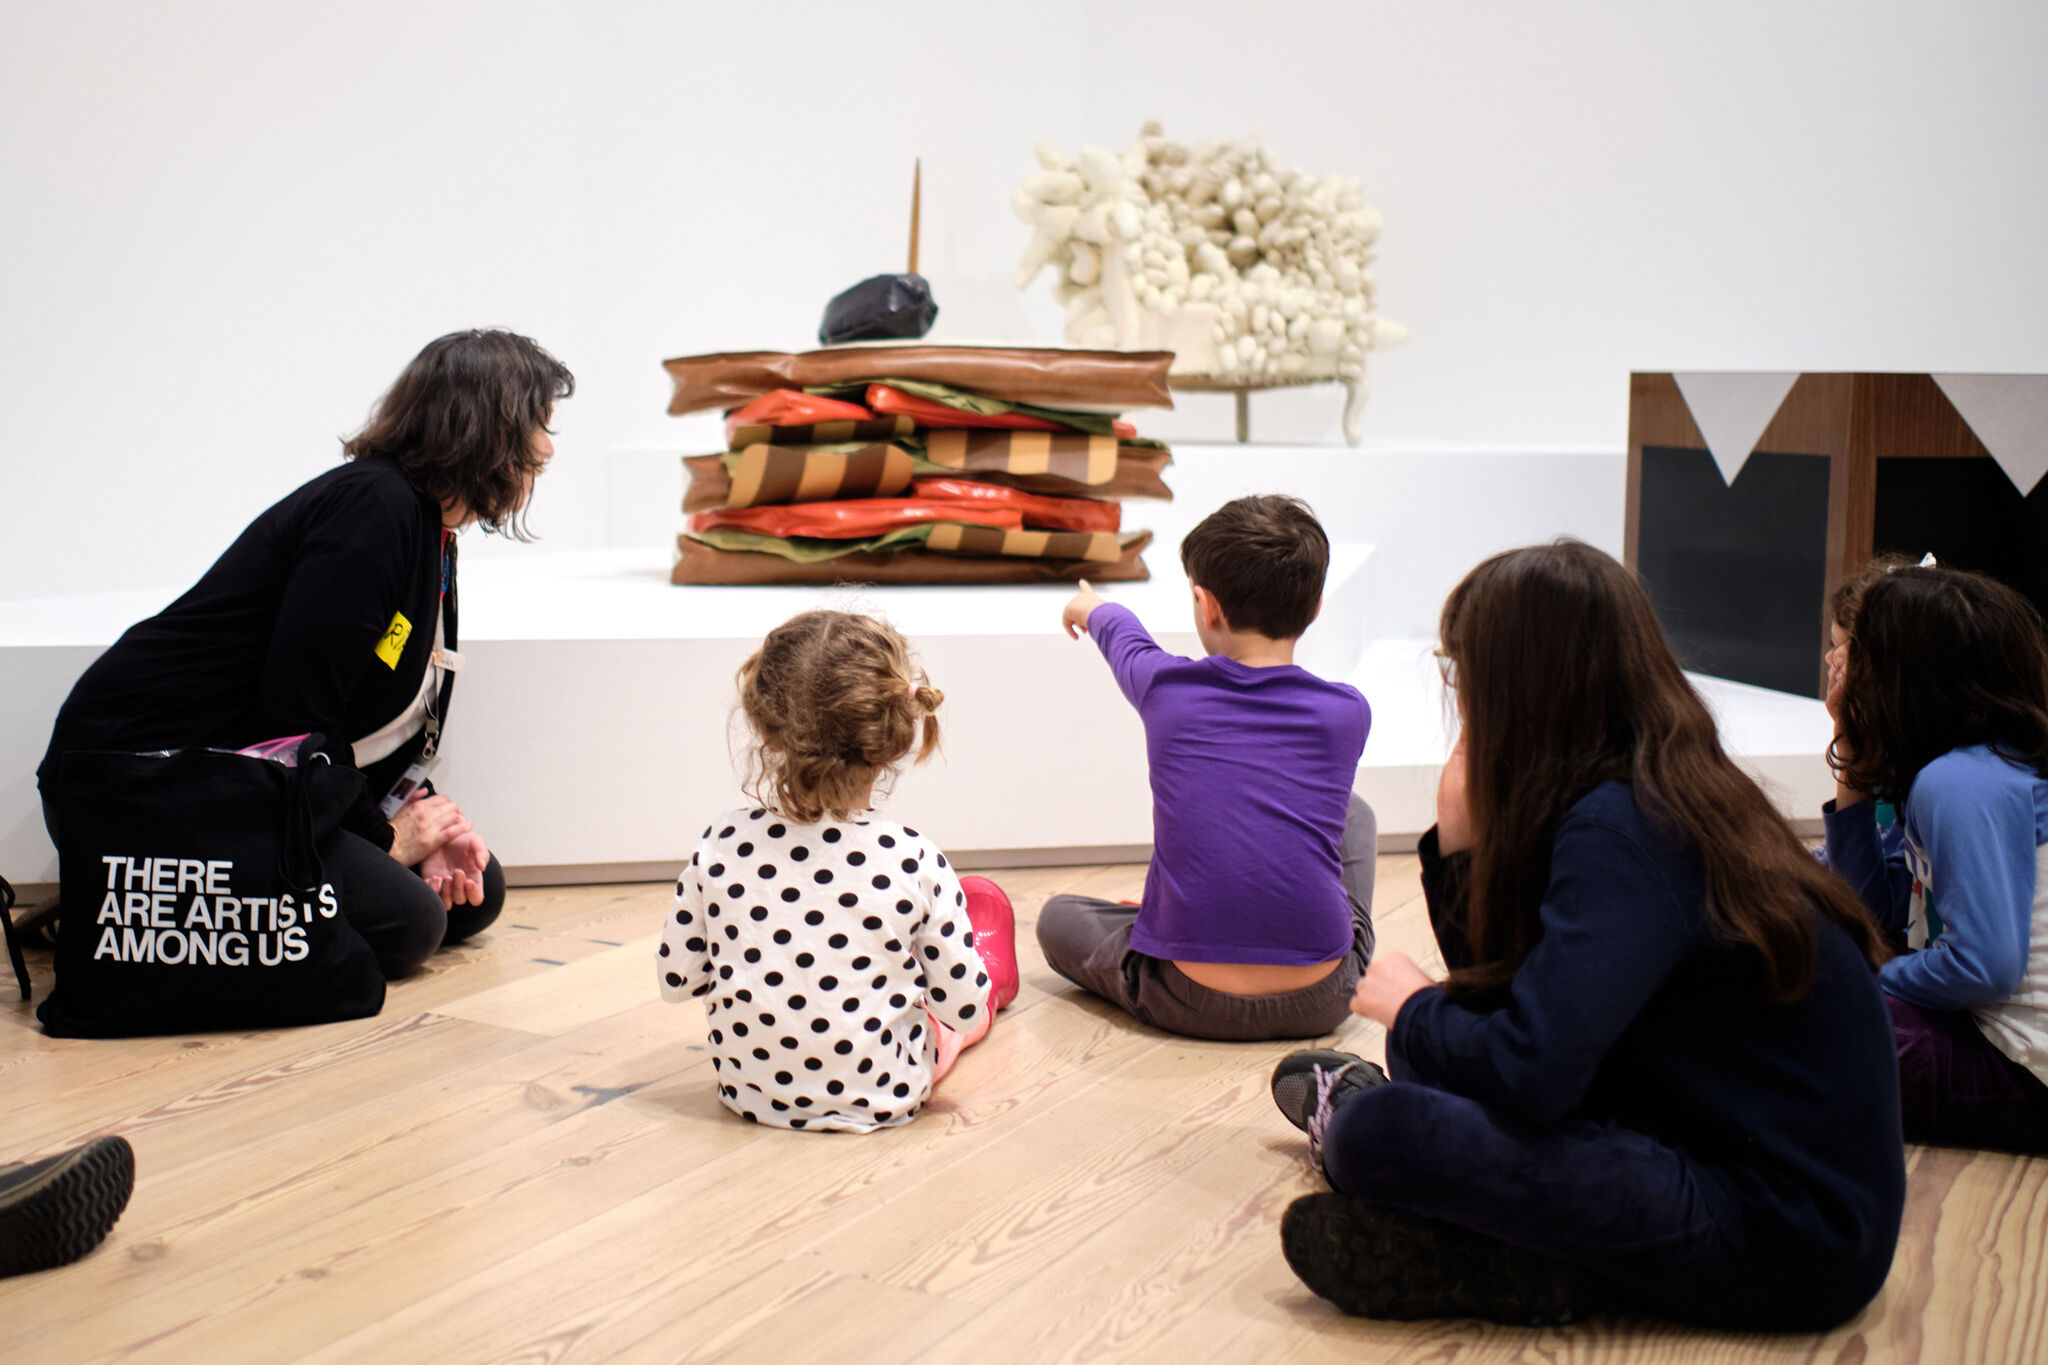 Un grupo de niños y adultos discuten una instalación en las galerías.